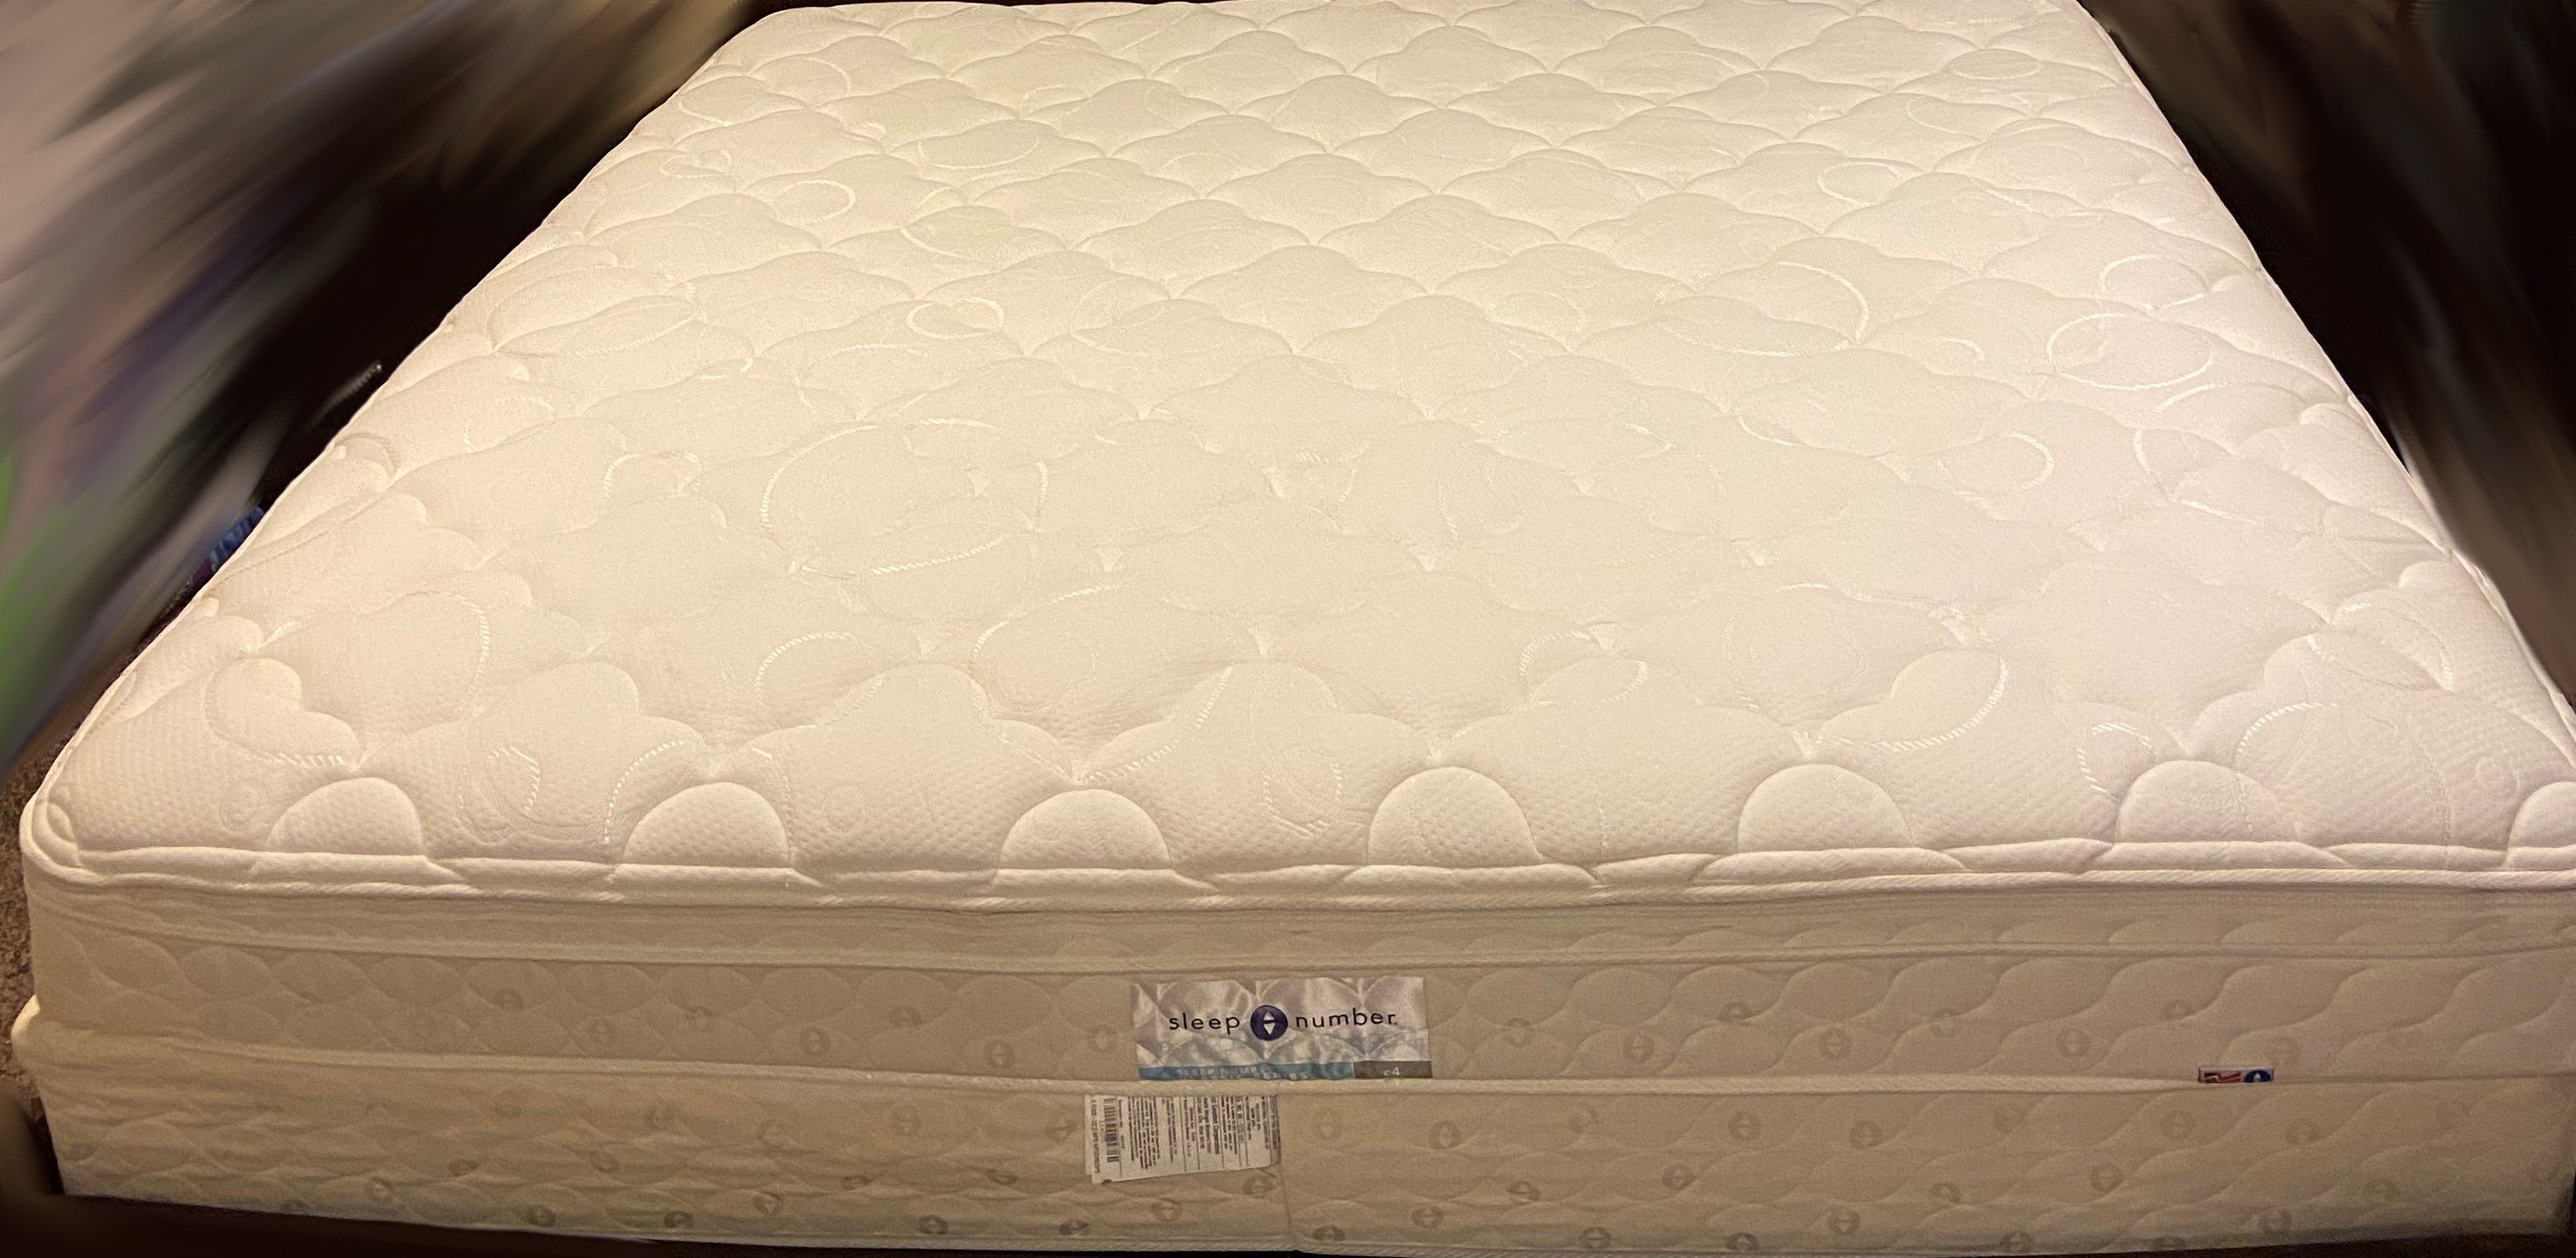 sleep number c4 mattress reviews